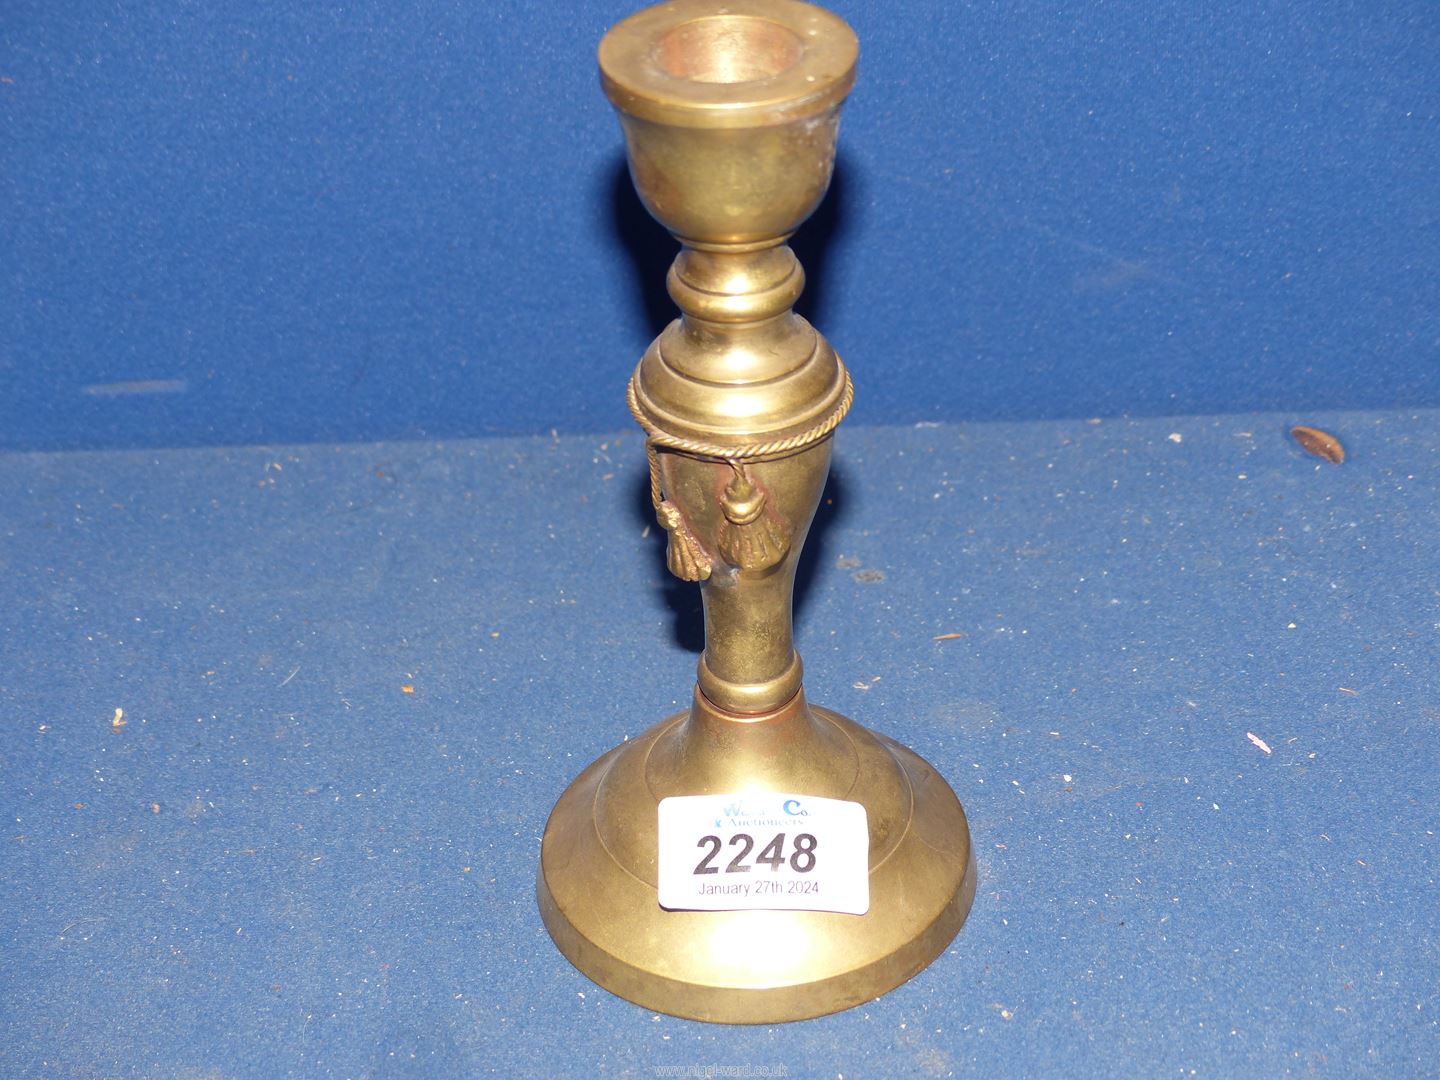 A brass candlestick.